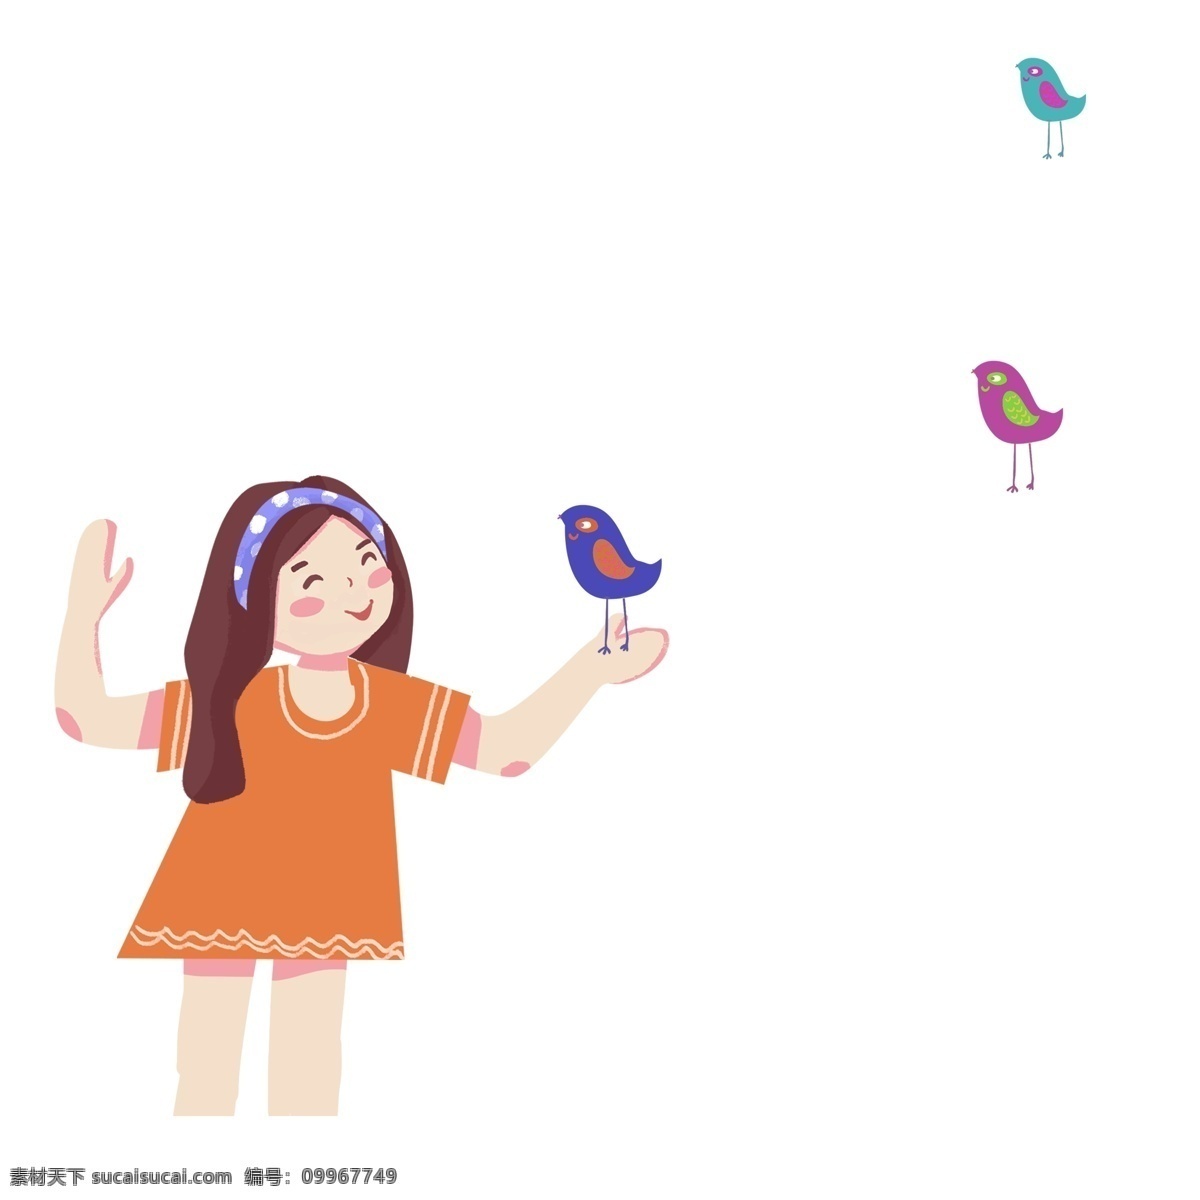 可爱 女孩 小鸟 商用 元素 卡通 人物 插画 彩色 儿童 小女孩 插画设计 童真